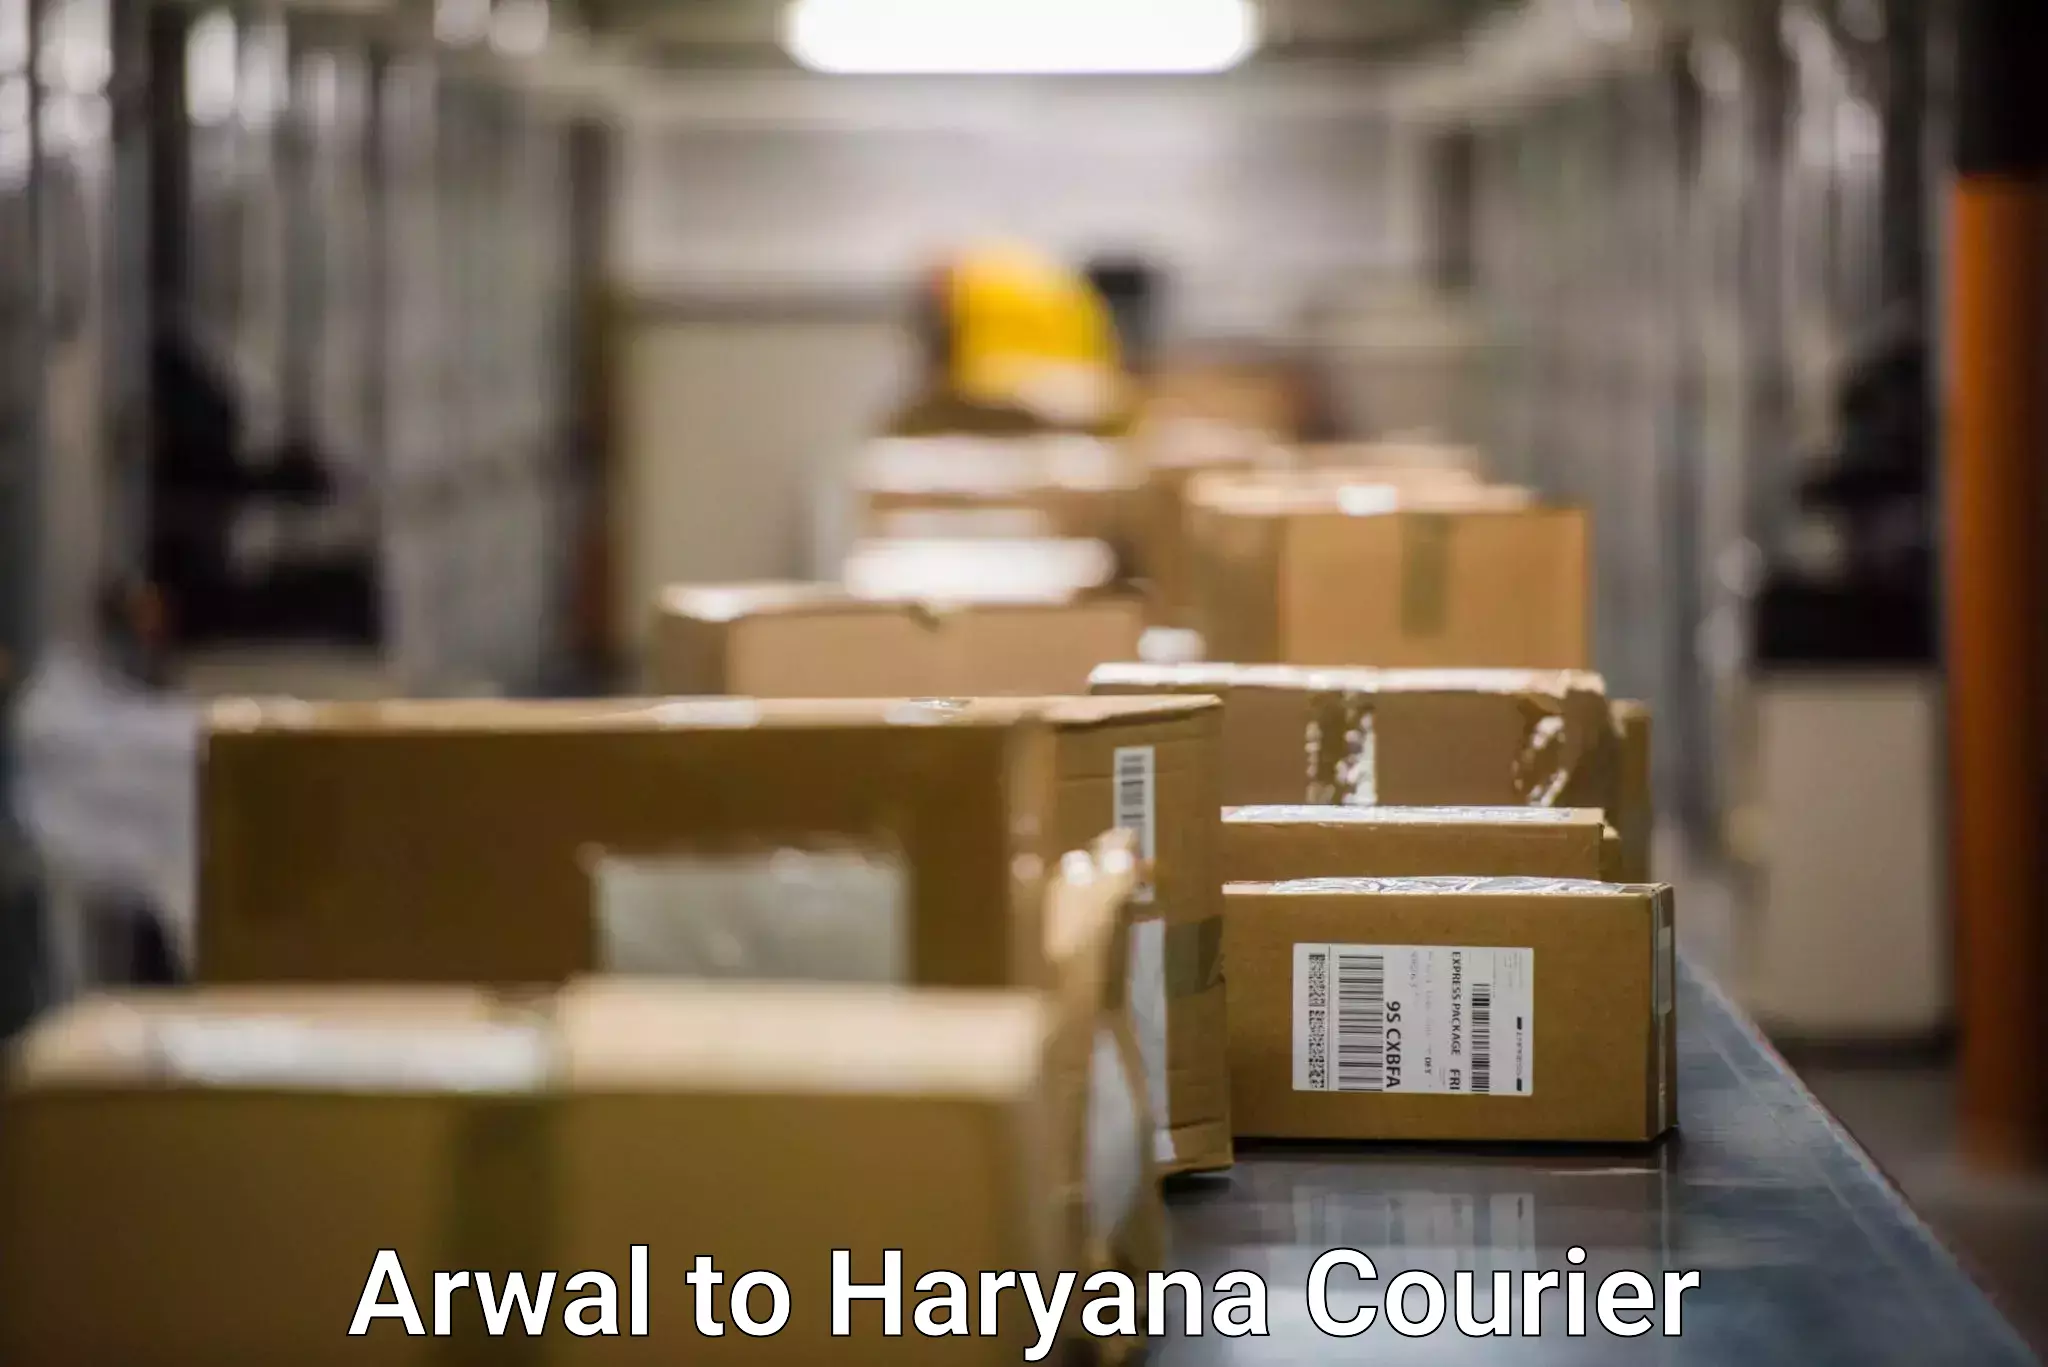 Package delivery network Arwal to Rewari